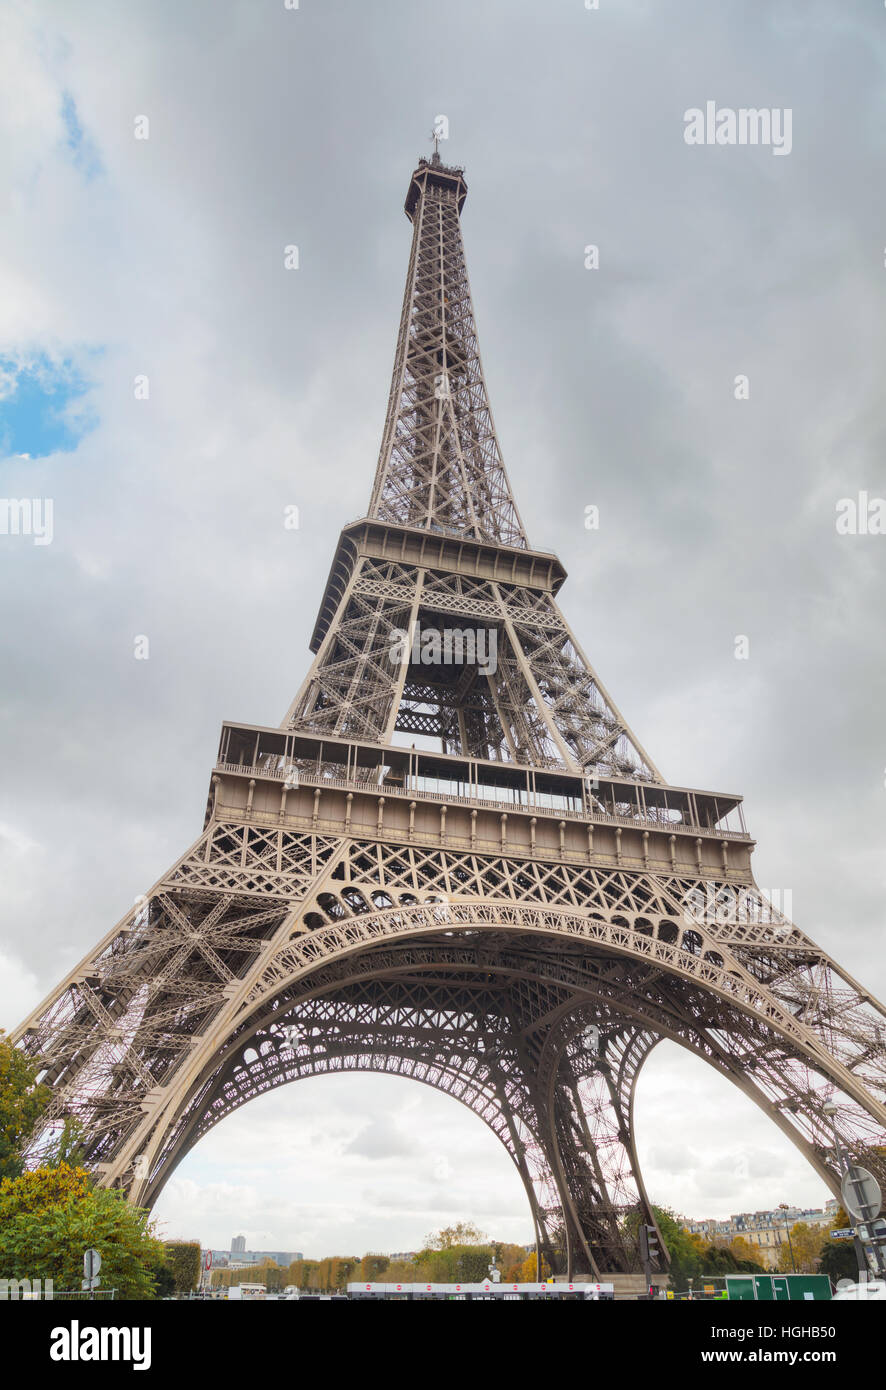 La tour Eiffel à Paris, France sur une journée nuageuse Banque D'Images